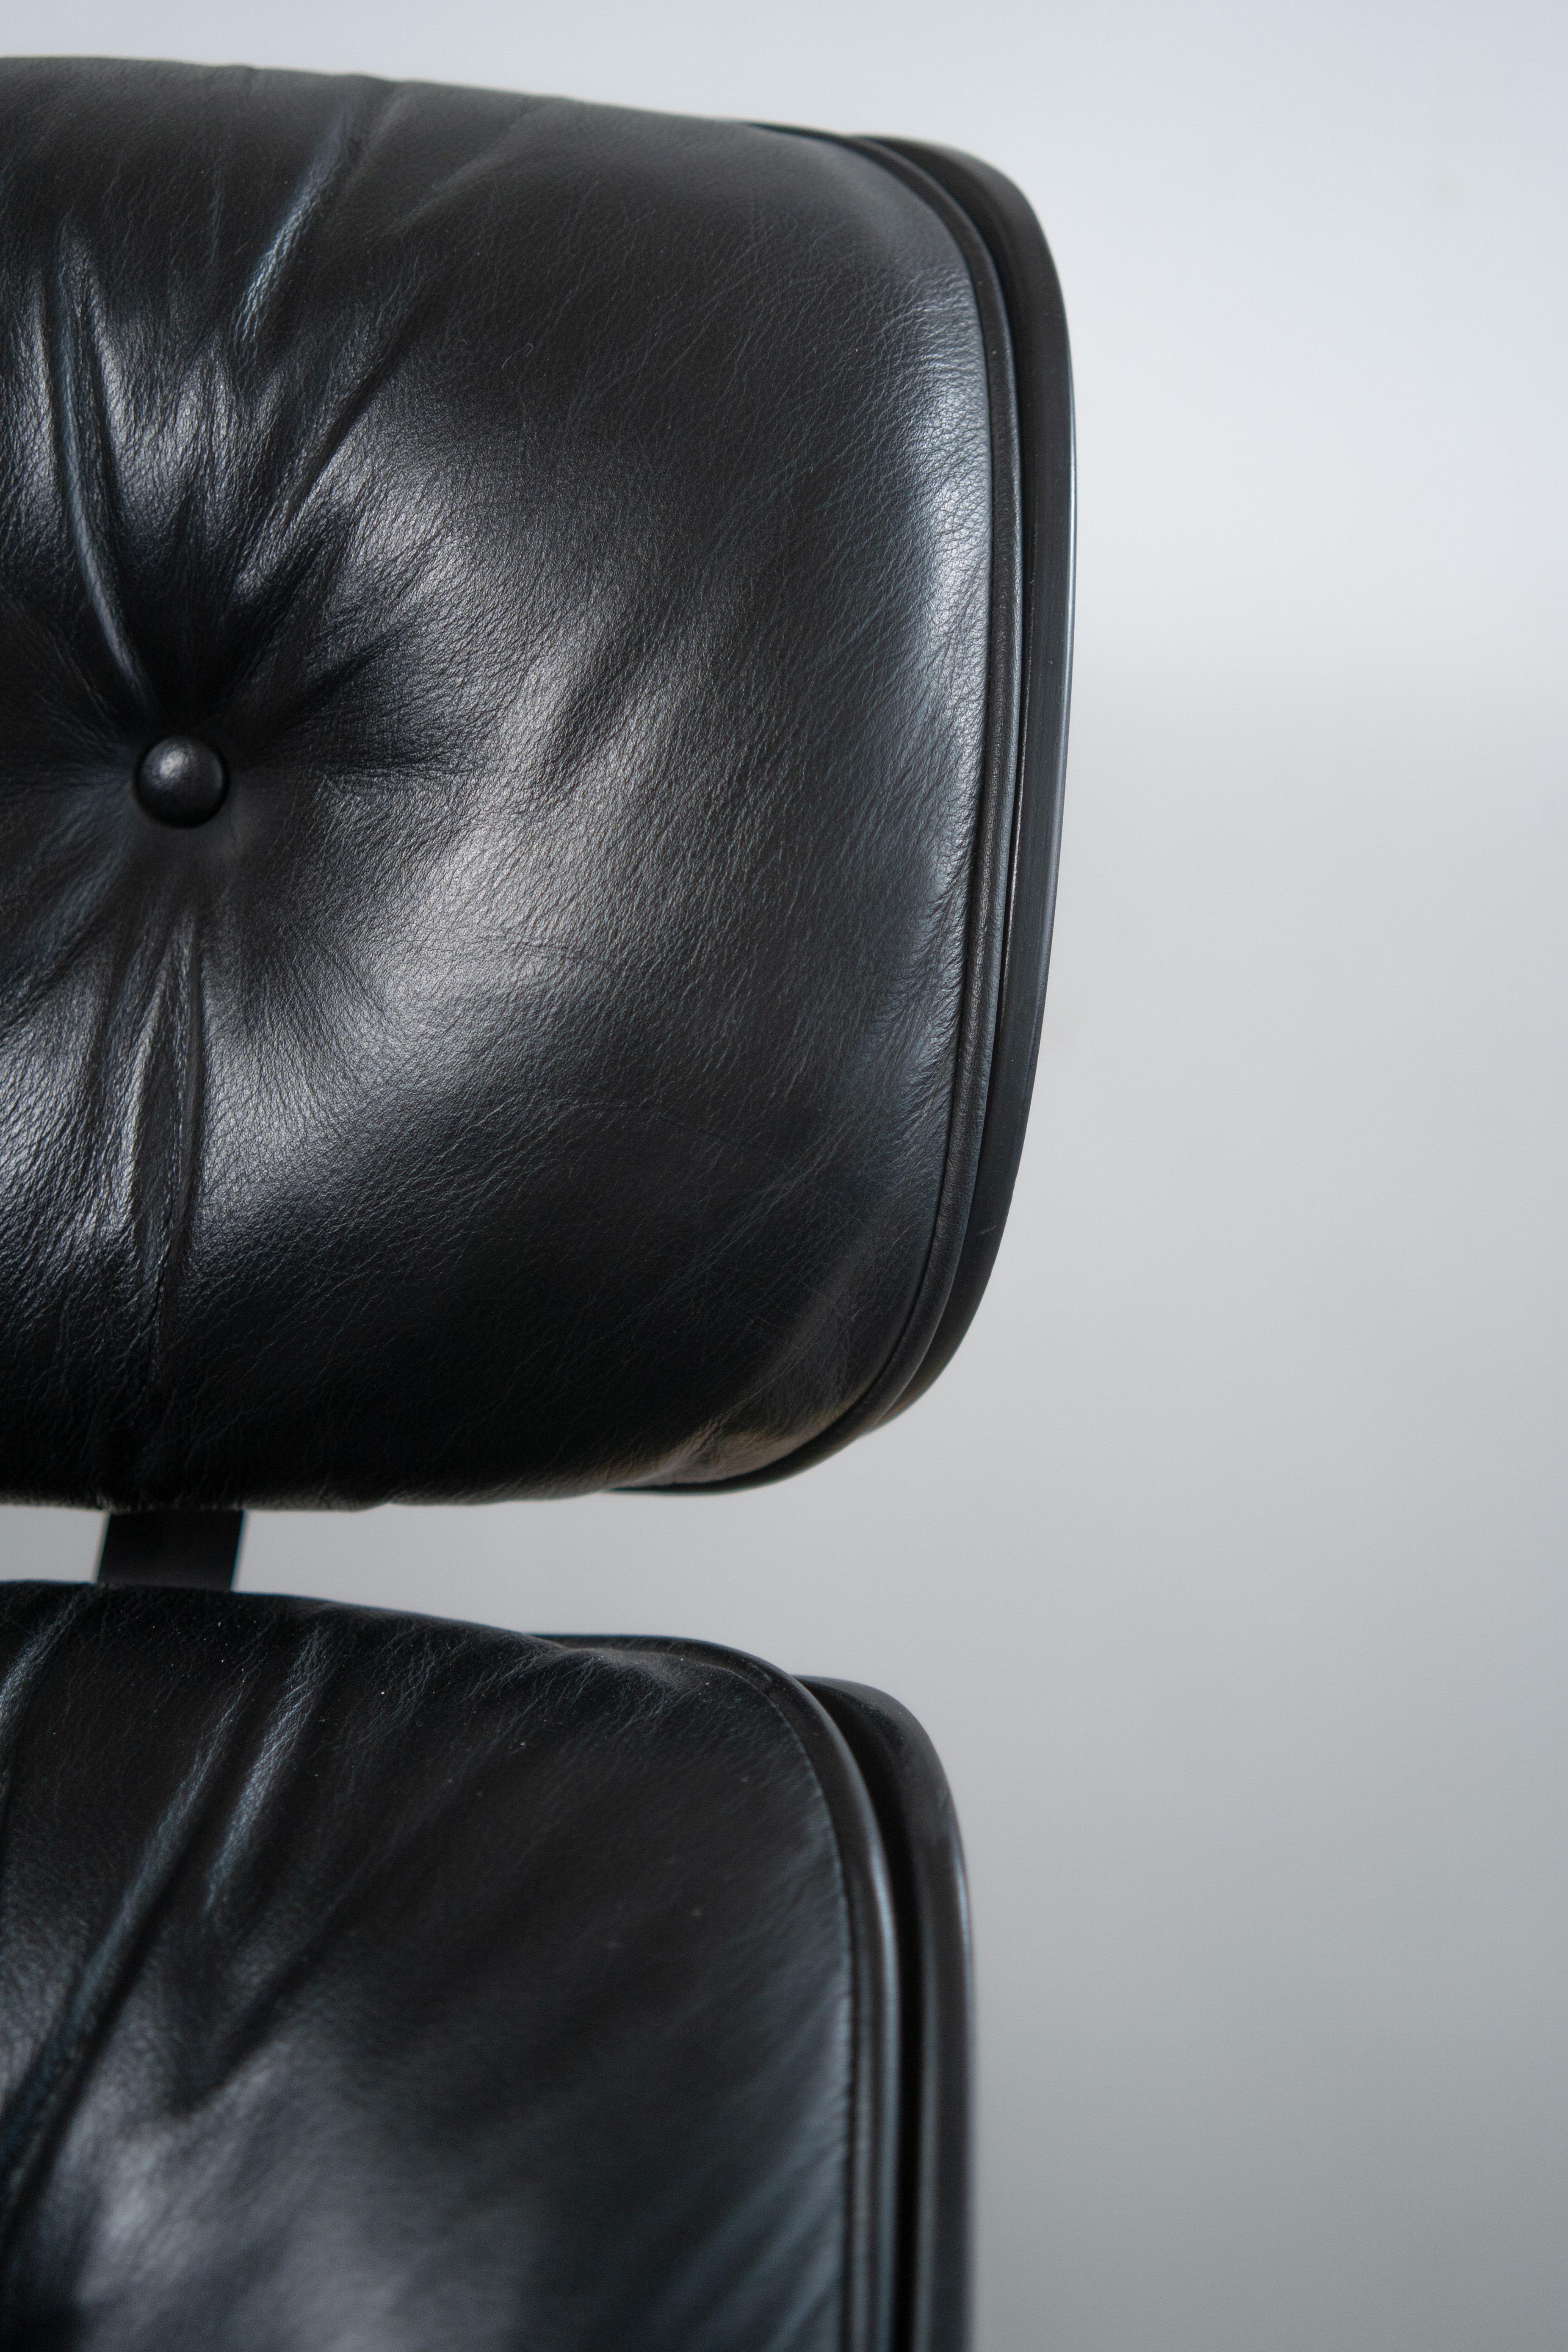 Lounge Chair von Charles und Ray Eames für Herman Miller (Metall)